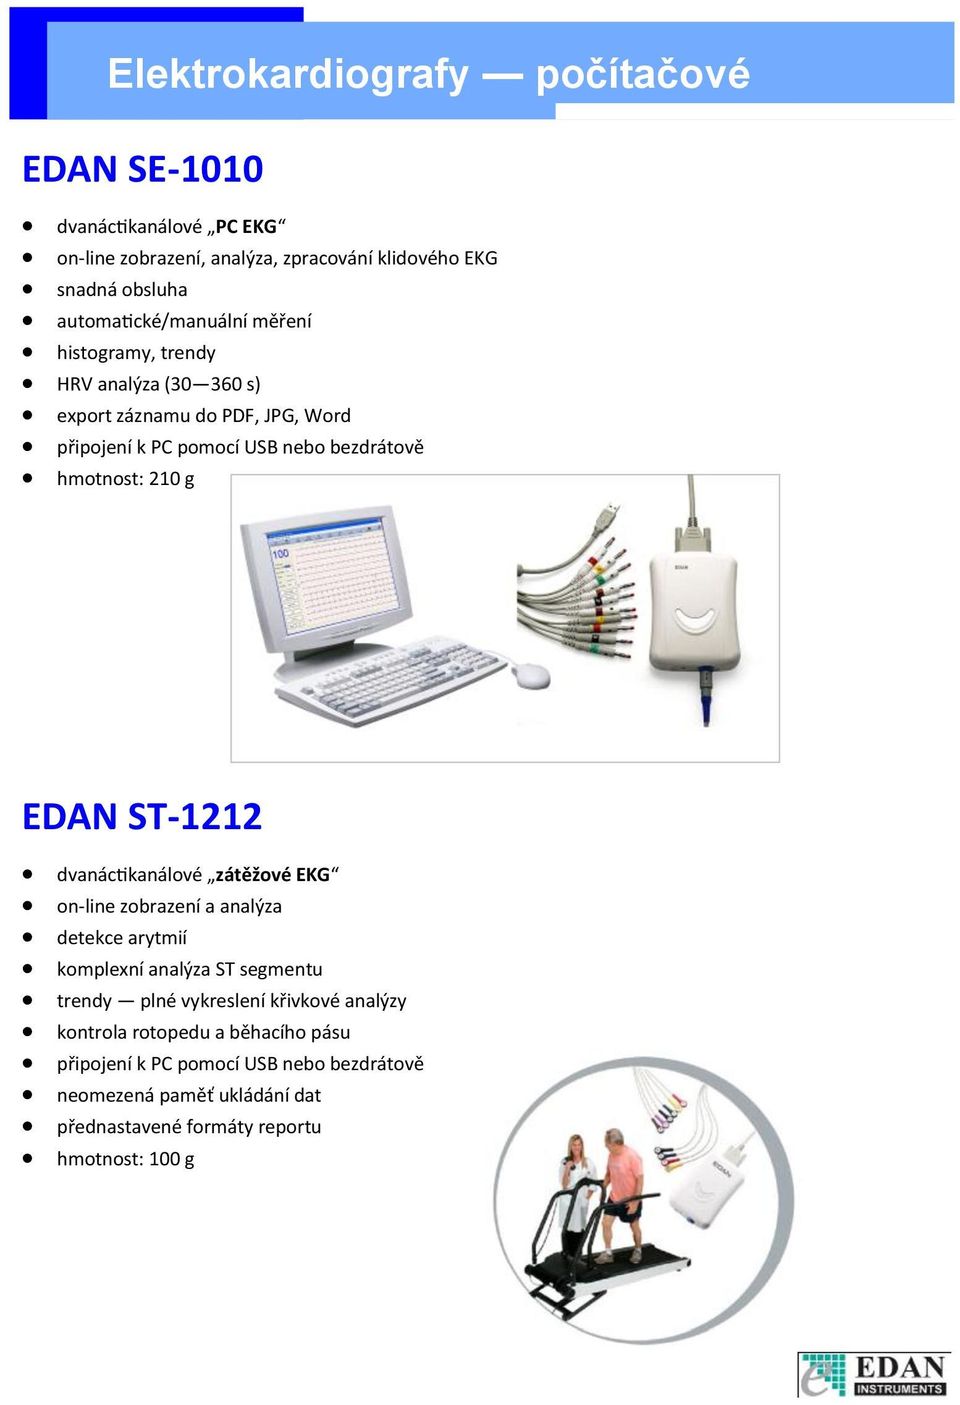 hmotnost: 210 g EDAN ST-1212 dvanáctikanálové zátěžové EKG on-line zobrazení a analýza detekce arytmií komplexní analýza ST segmentu trendy plné